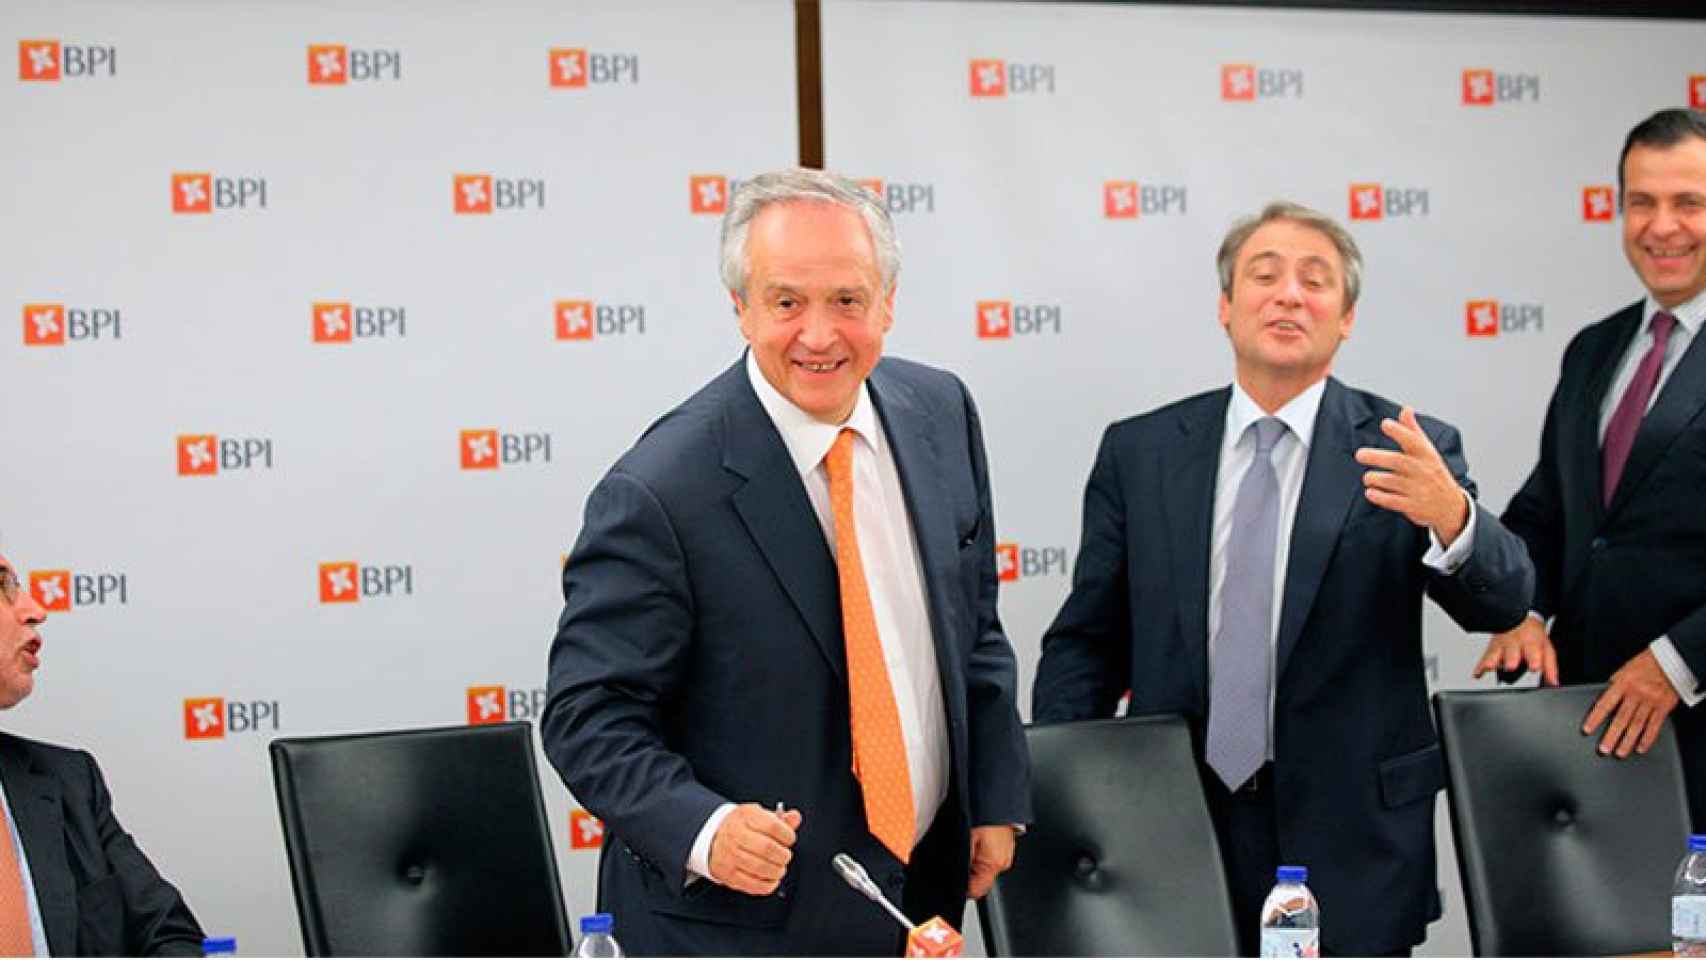 Fernando Ulrich, en el centro de la imagen, es el CEO del BPI.